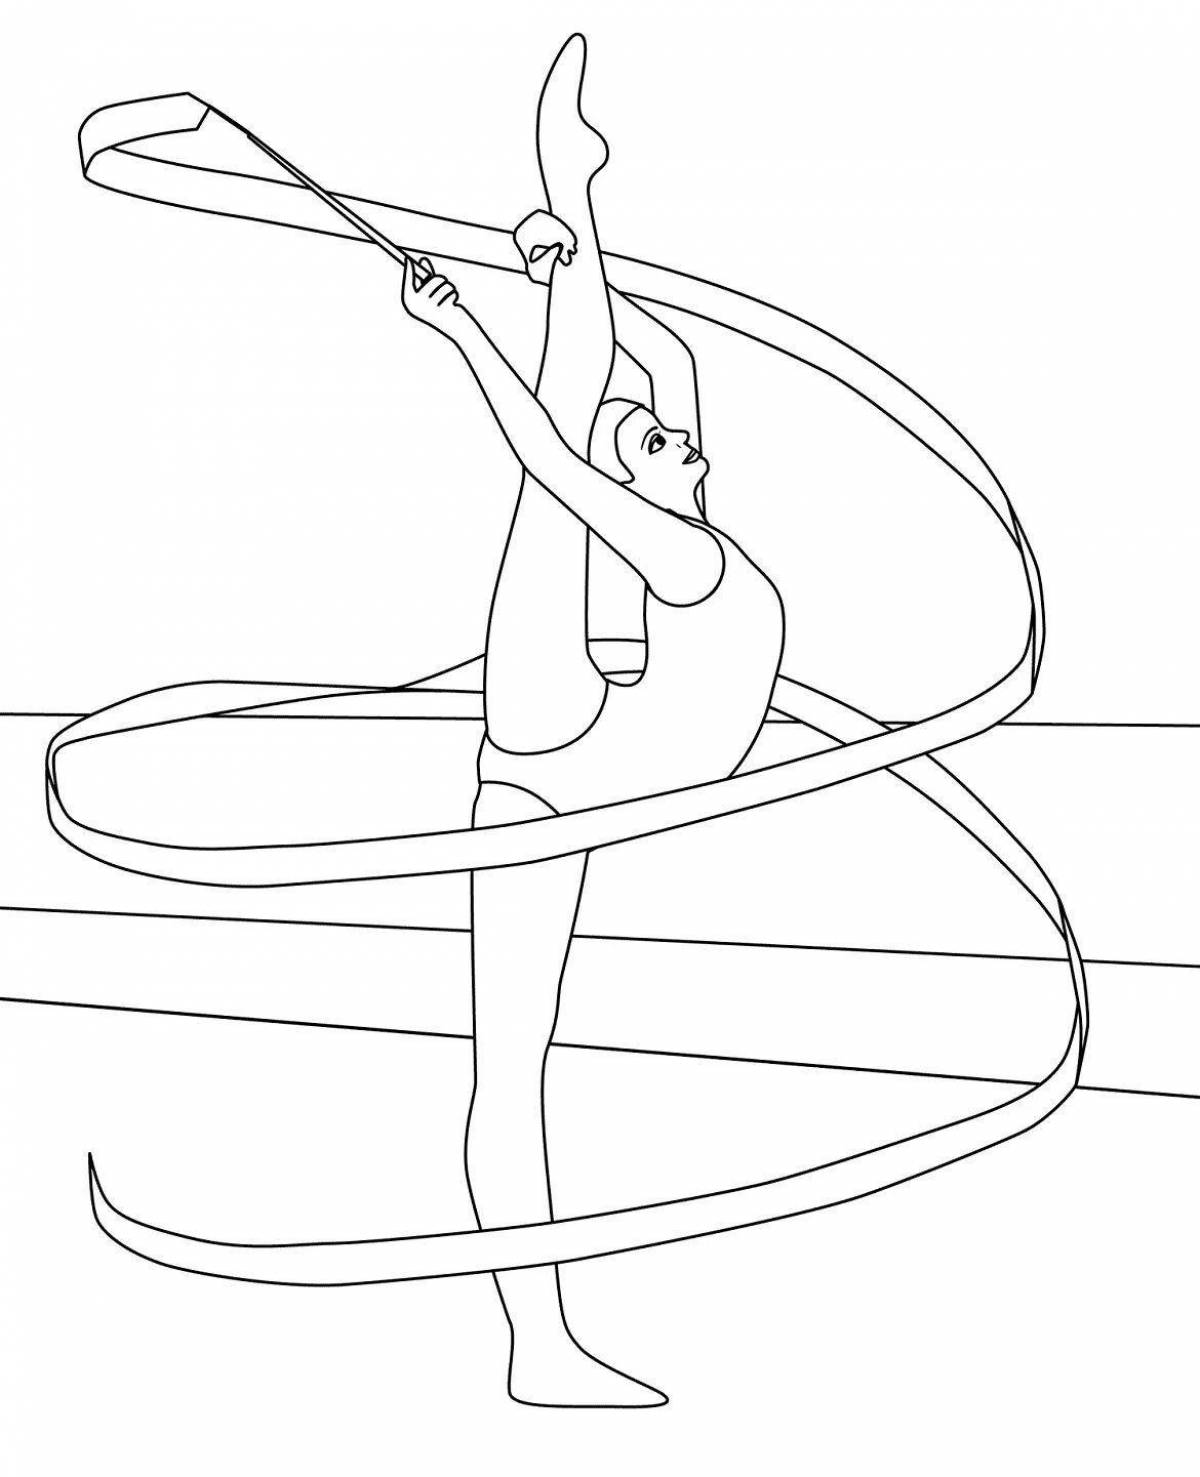 Acrobatic gymnast with hoop